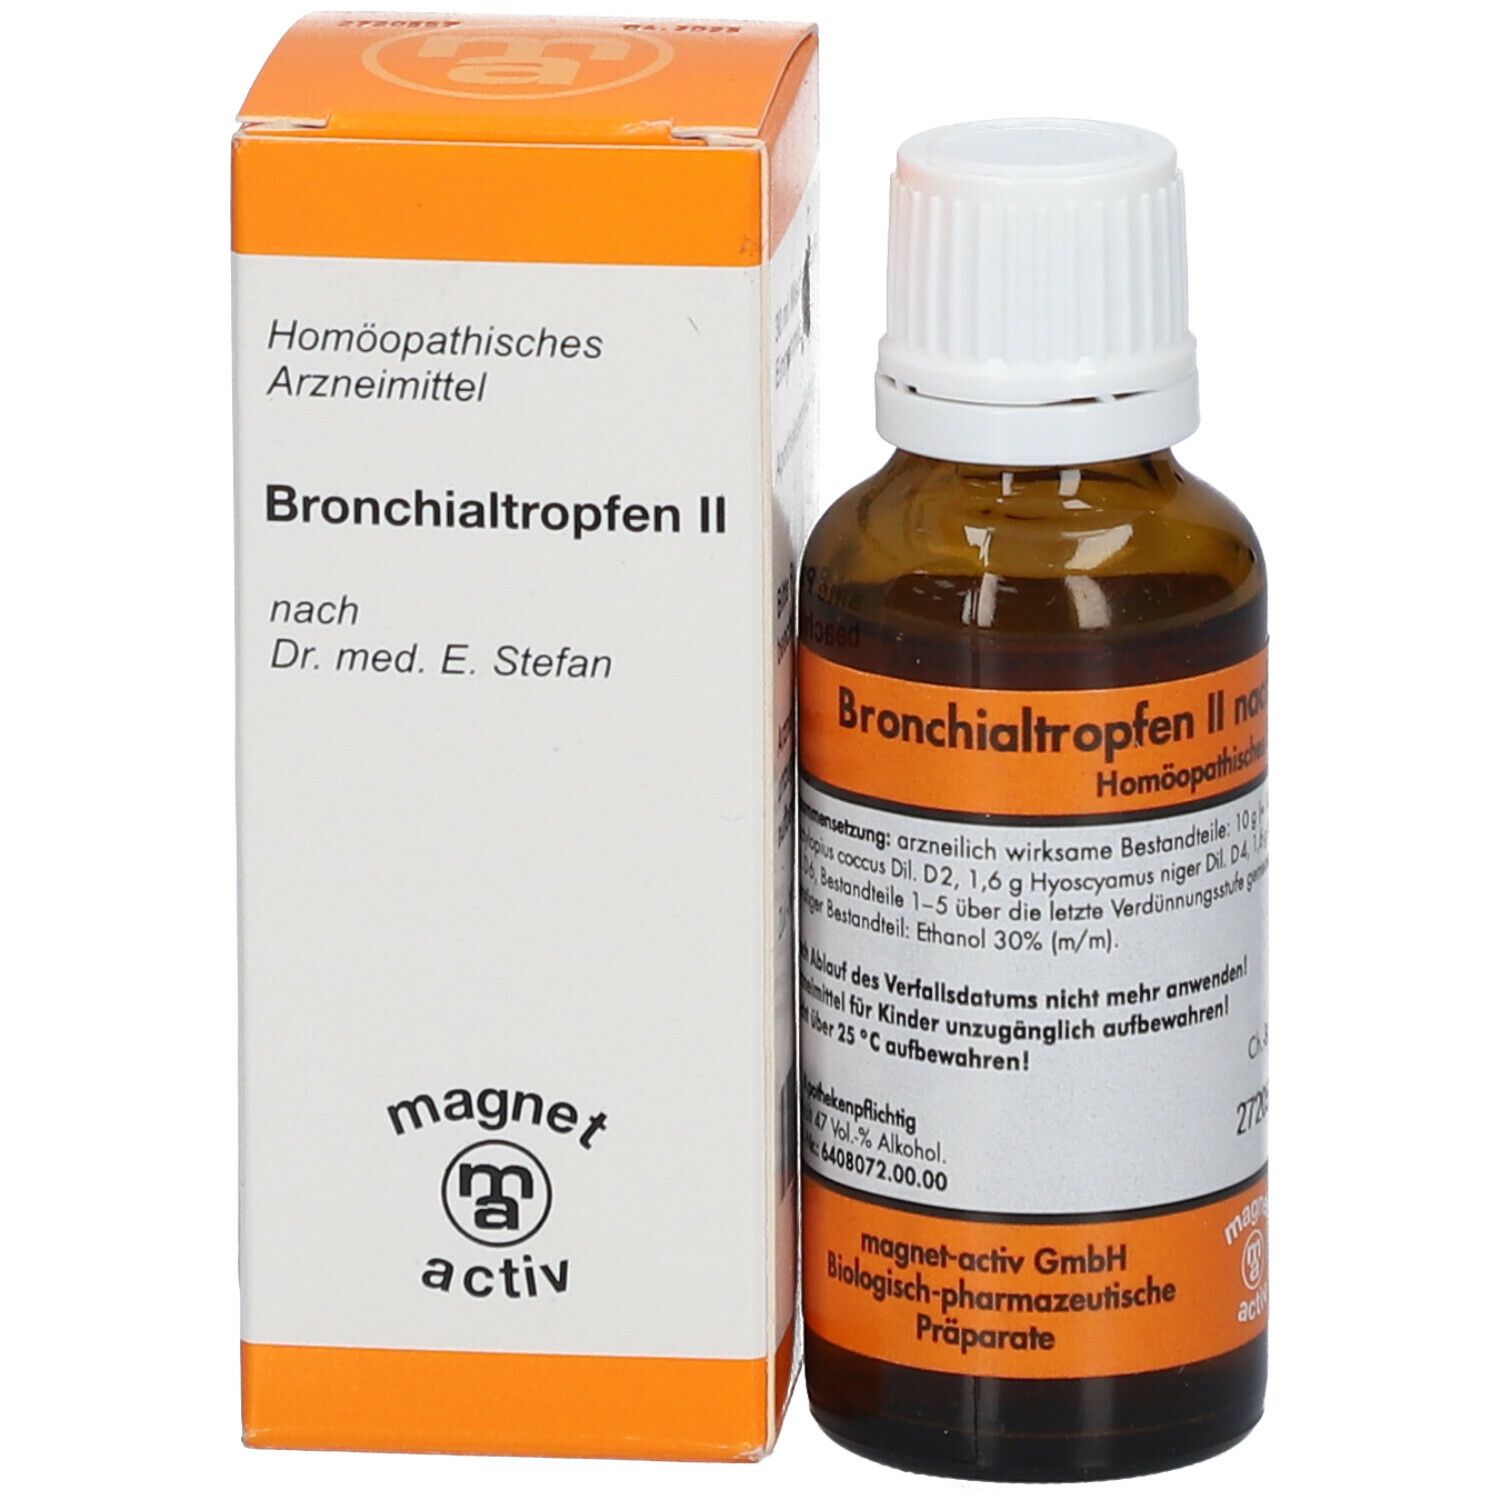 magnet-activ Bronchialtropfen II